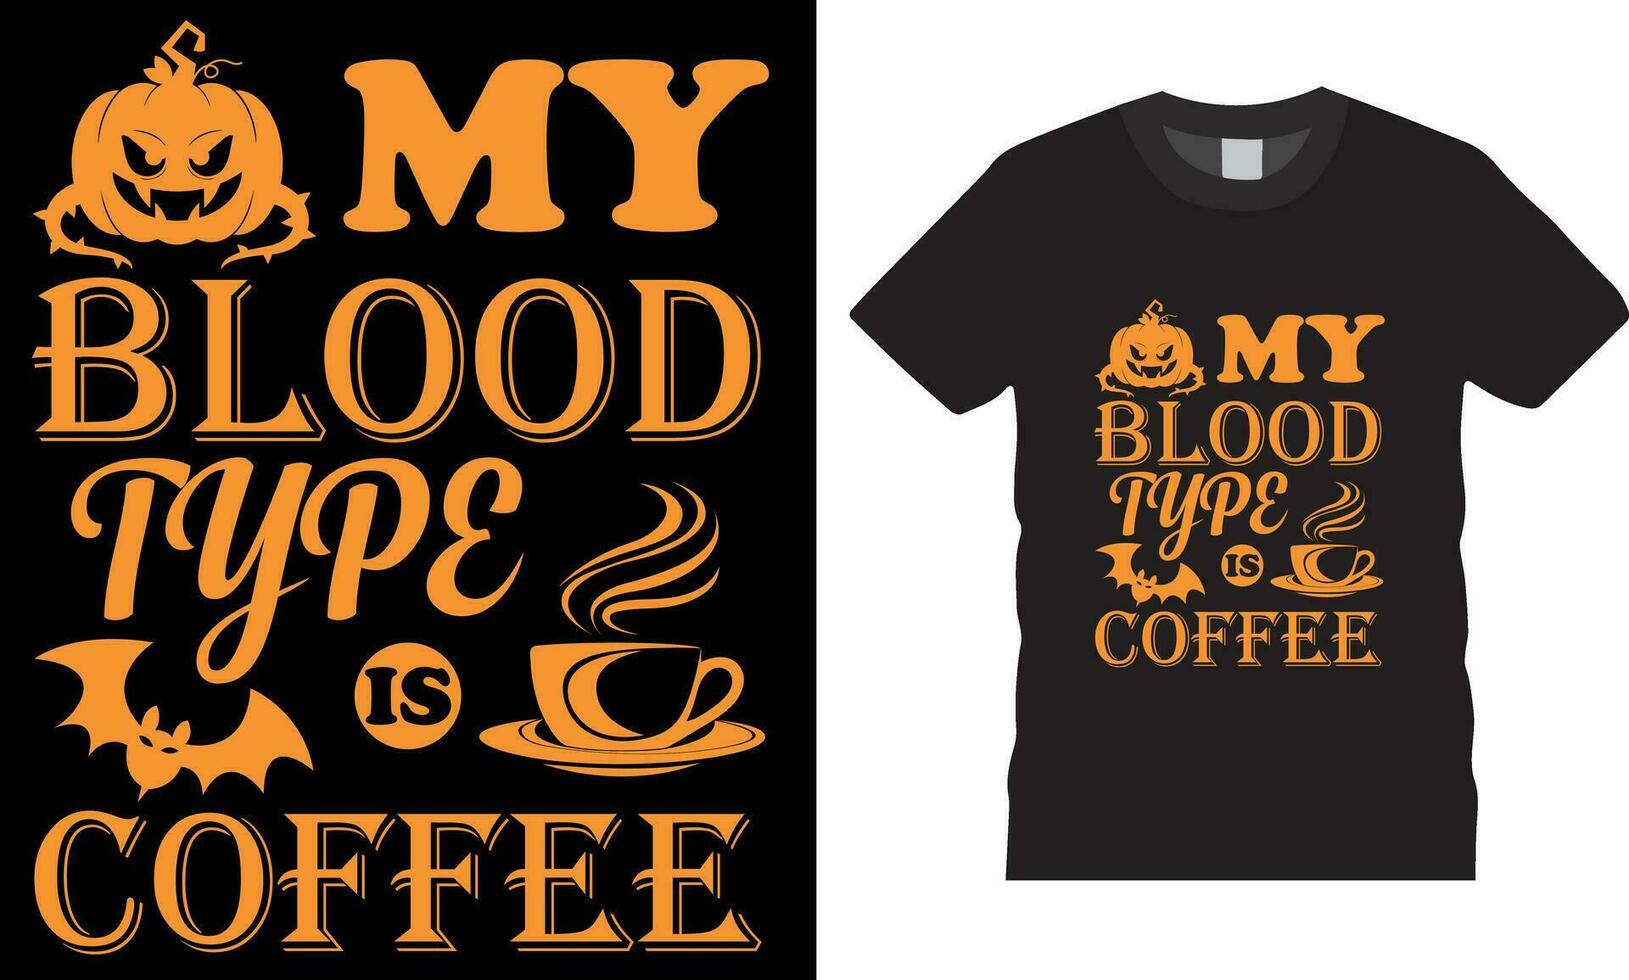 mio sangue genere è caffè - Halloween t camicia design vettore modello